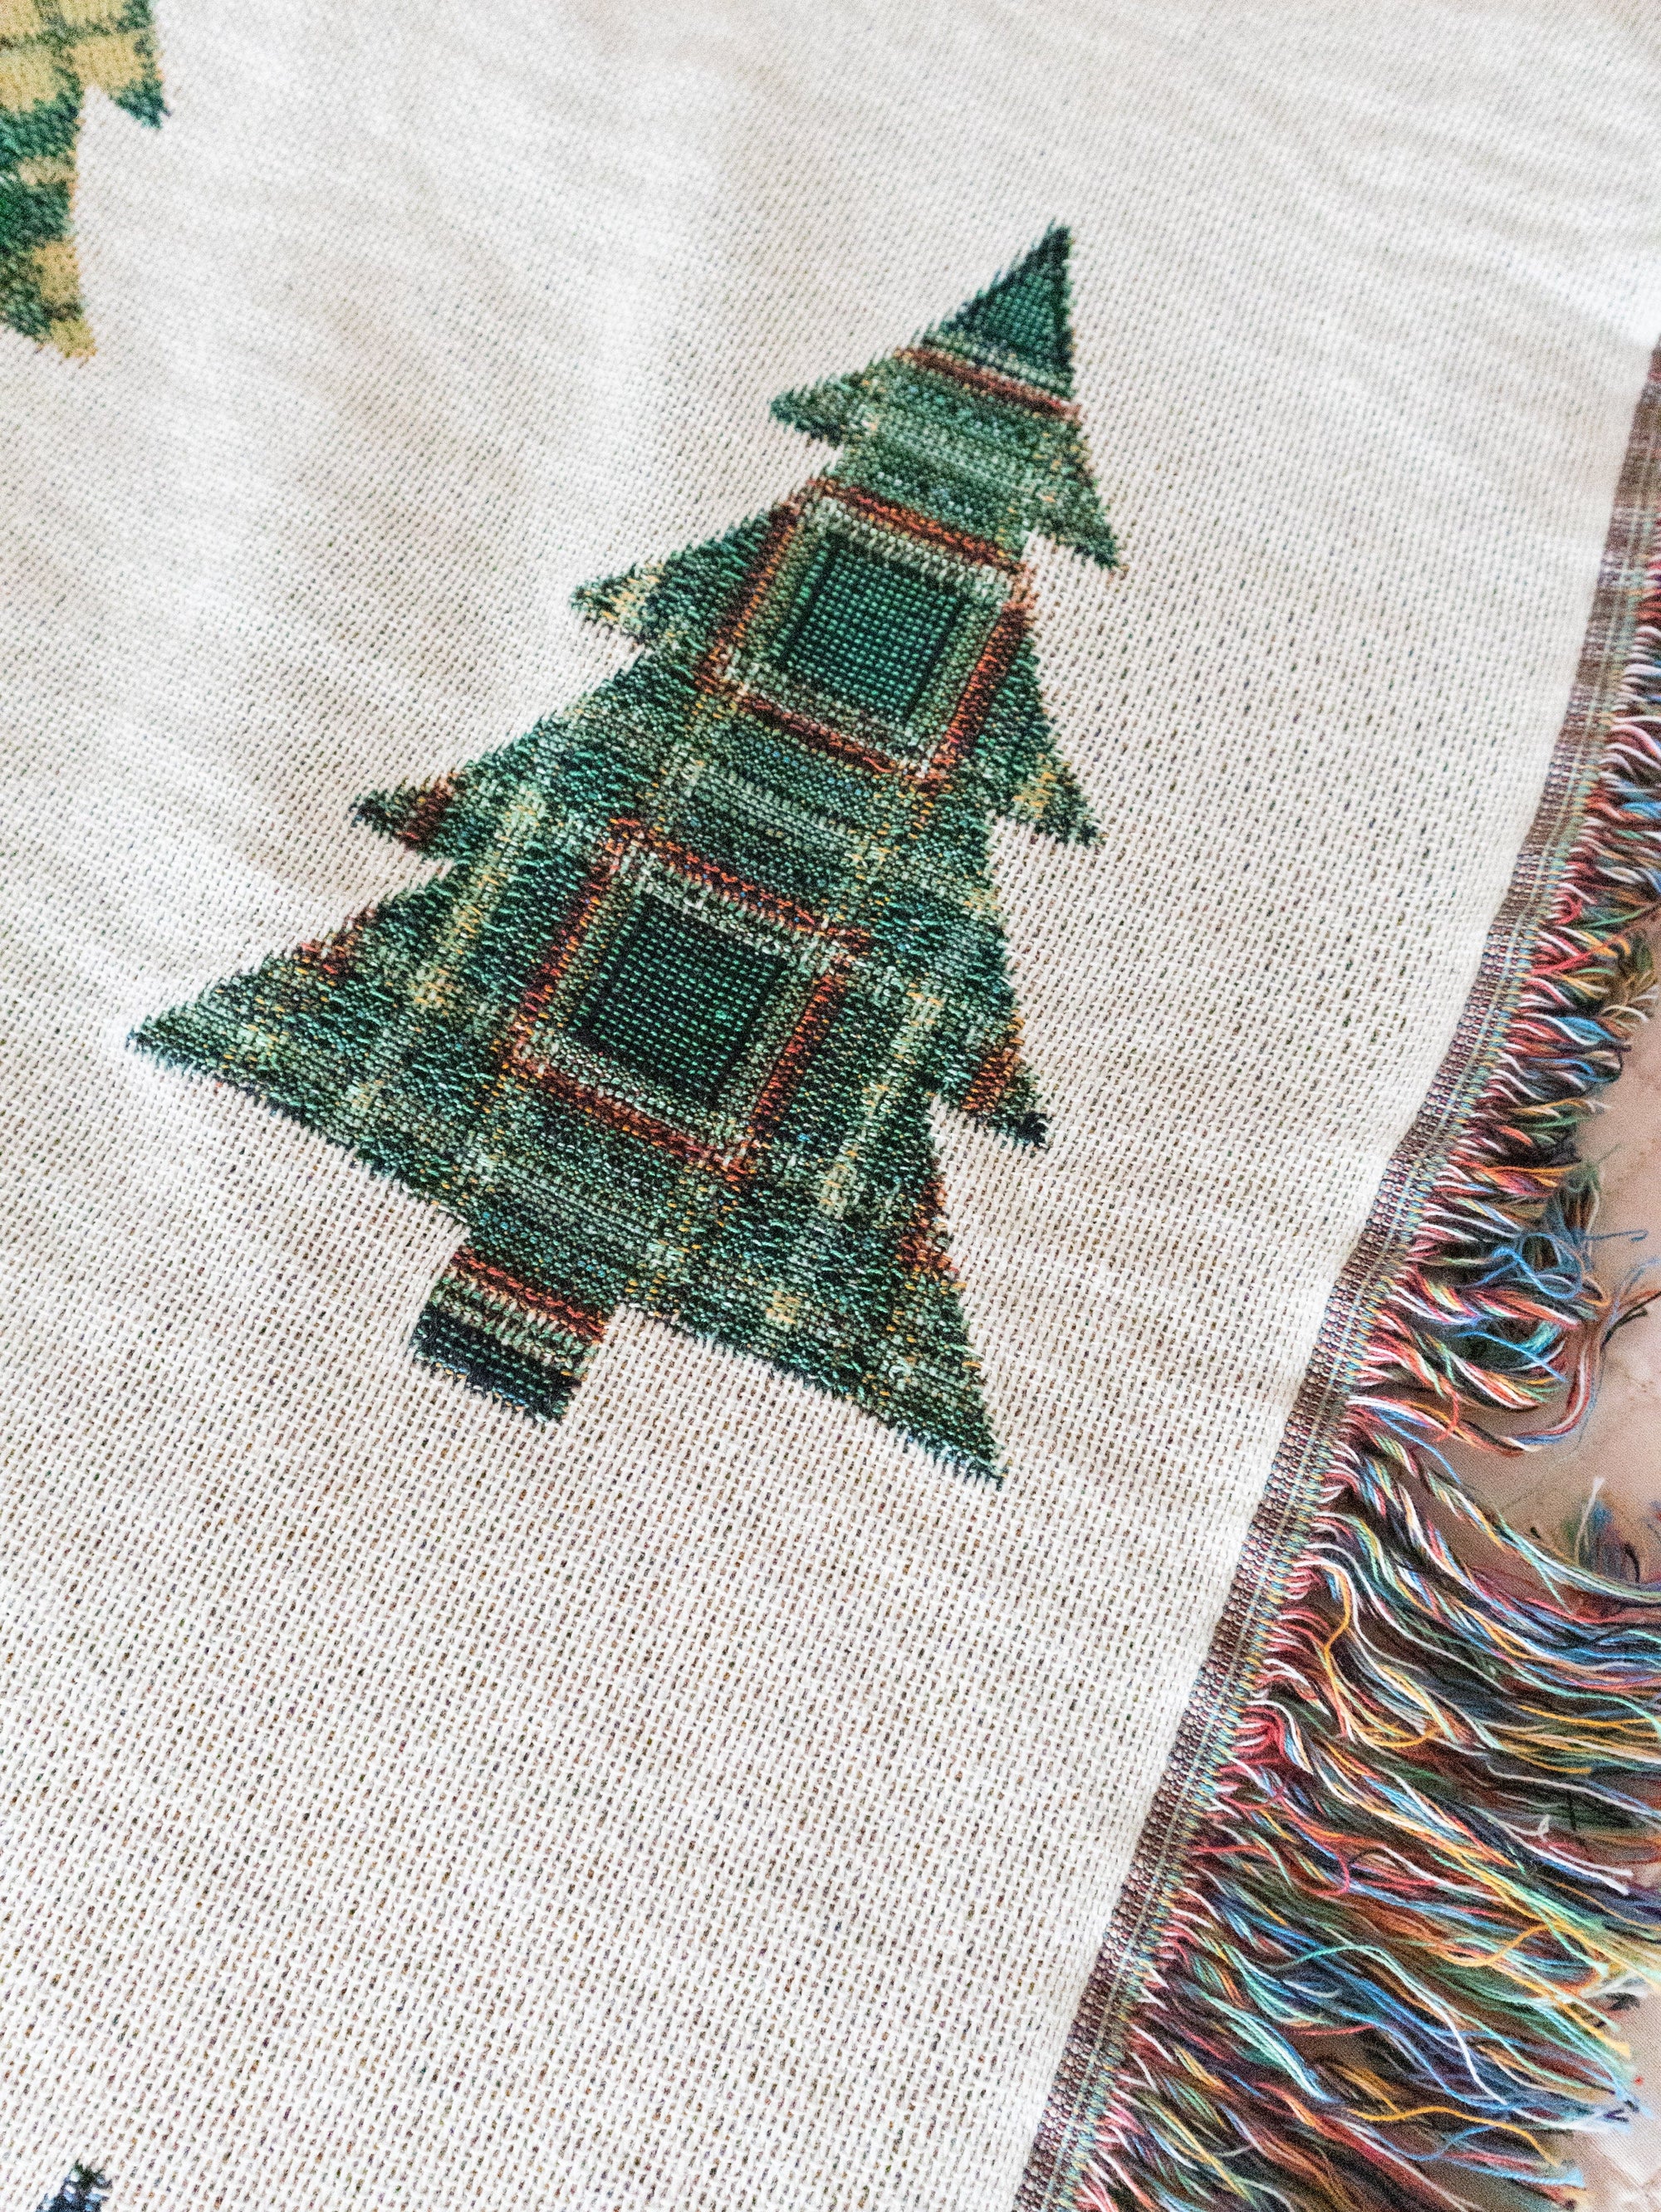 Plaid Trees Christmas Blanket